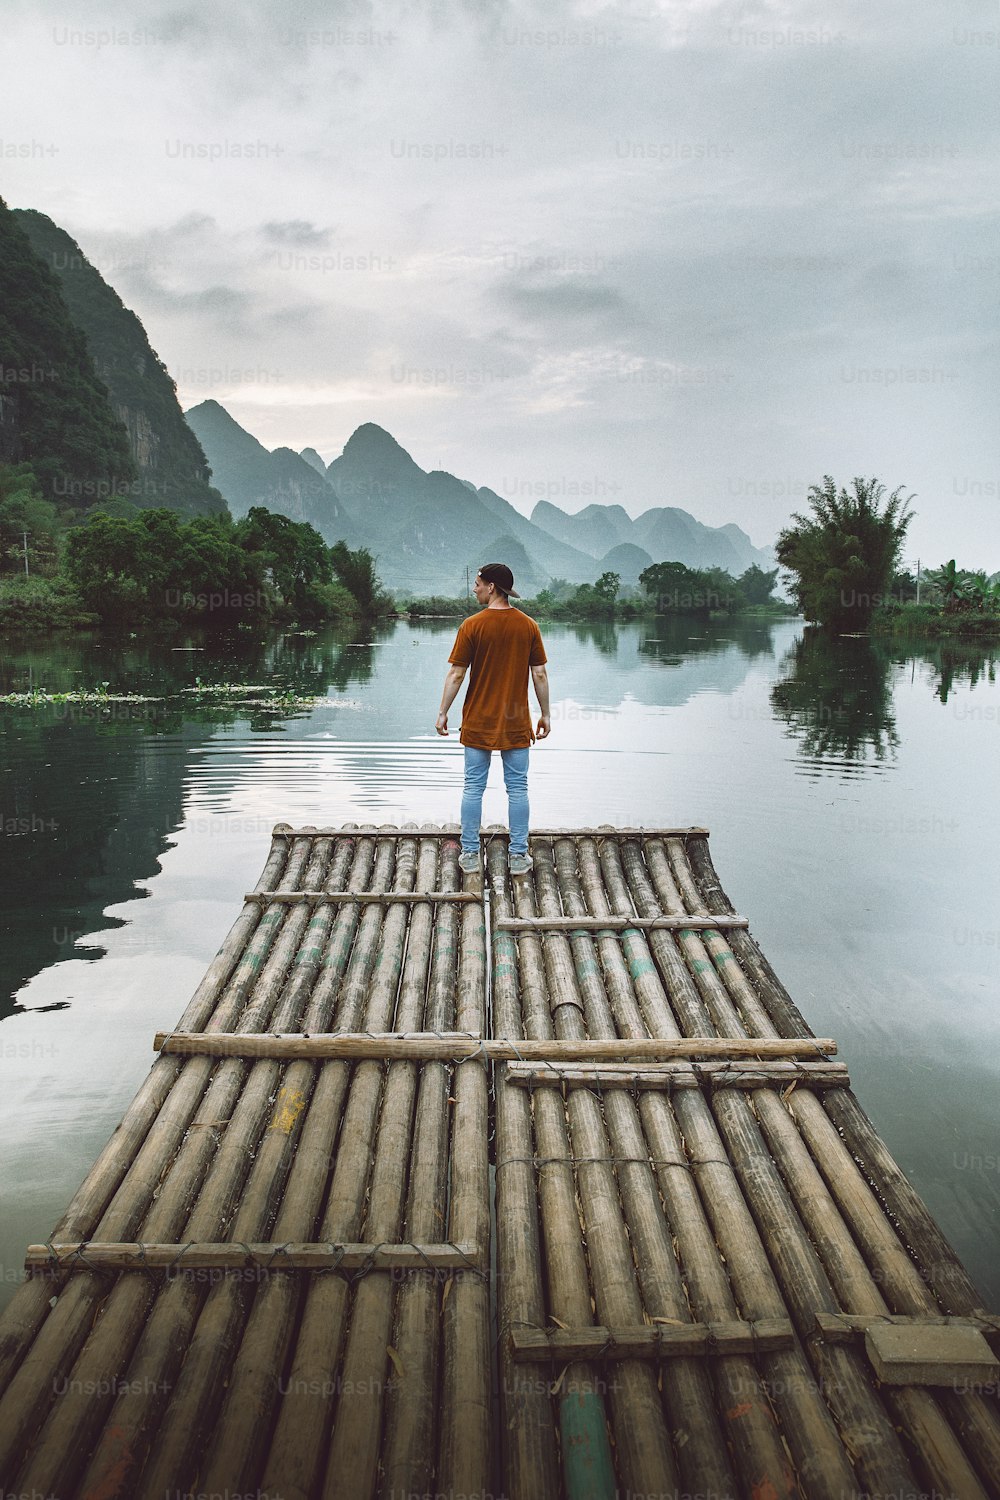 une personne debout sur un radeau de bambou au milieu d’un plan d’eau